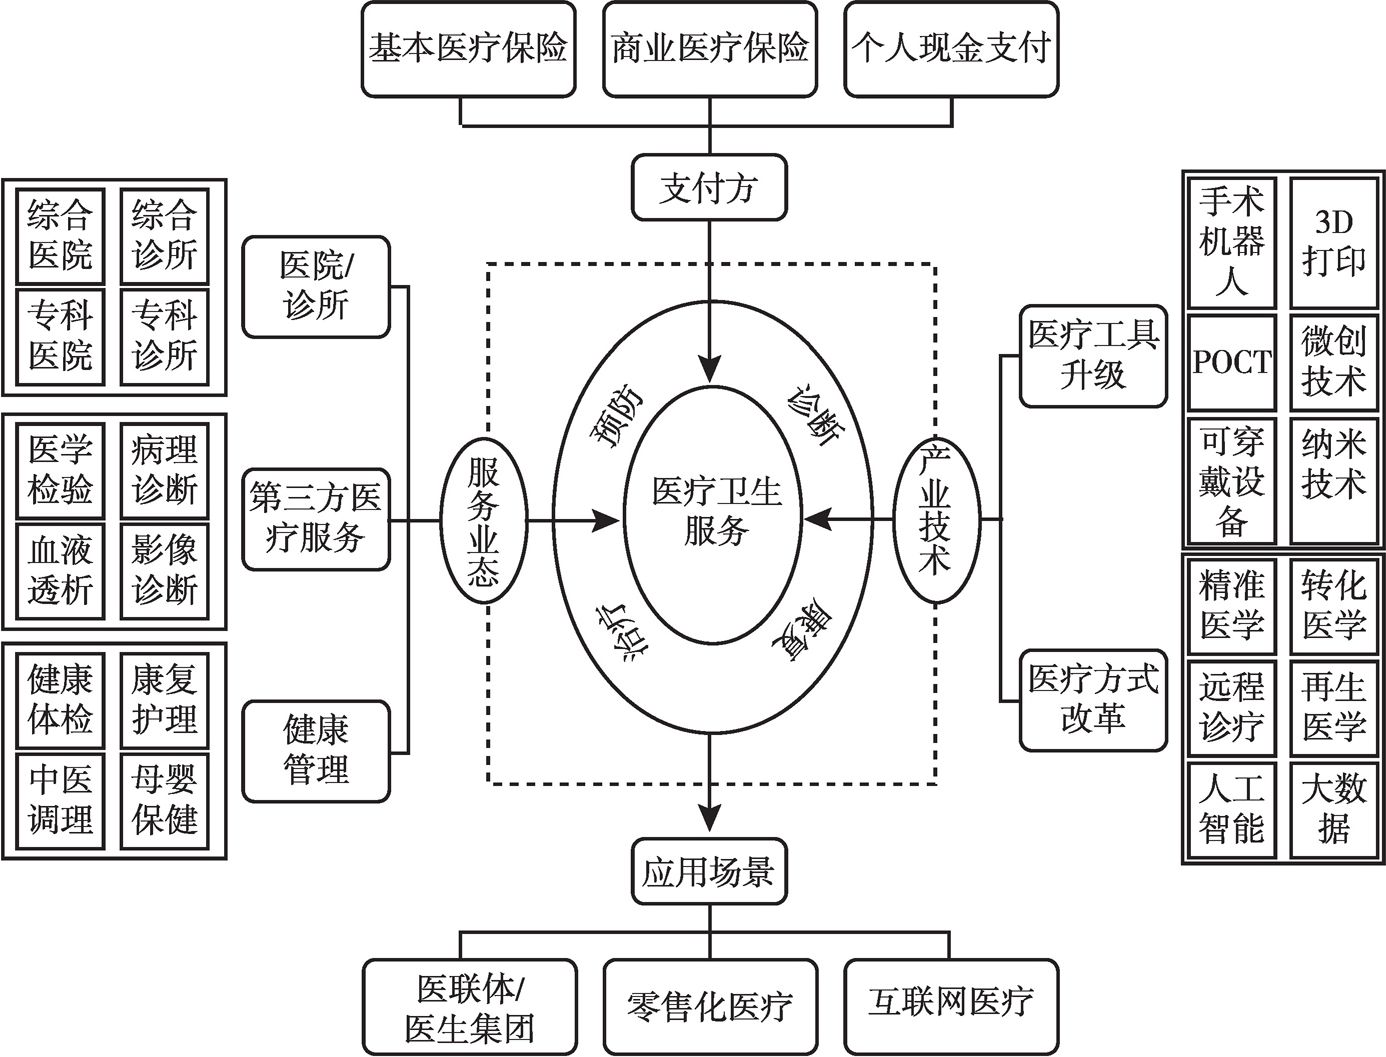 图4 中国医疗卫生服务链示意